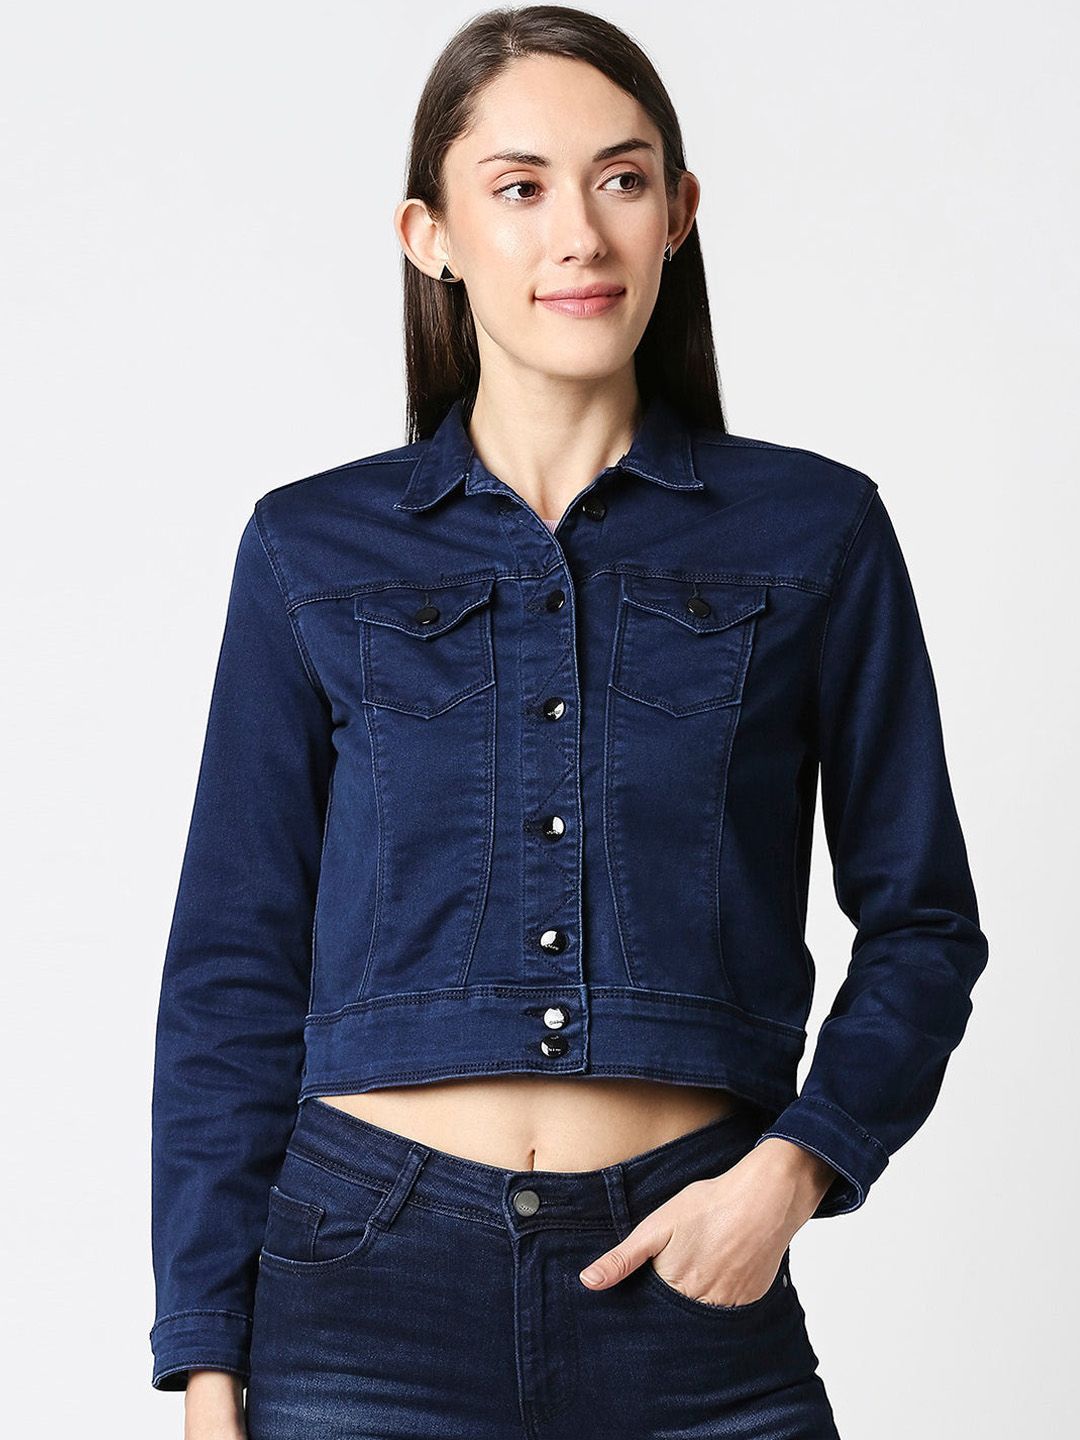 Kraus Jeans Women Blue Crop Cotton Denim Jacket Price in India